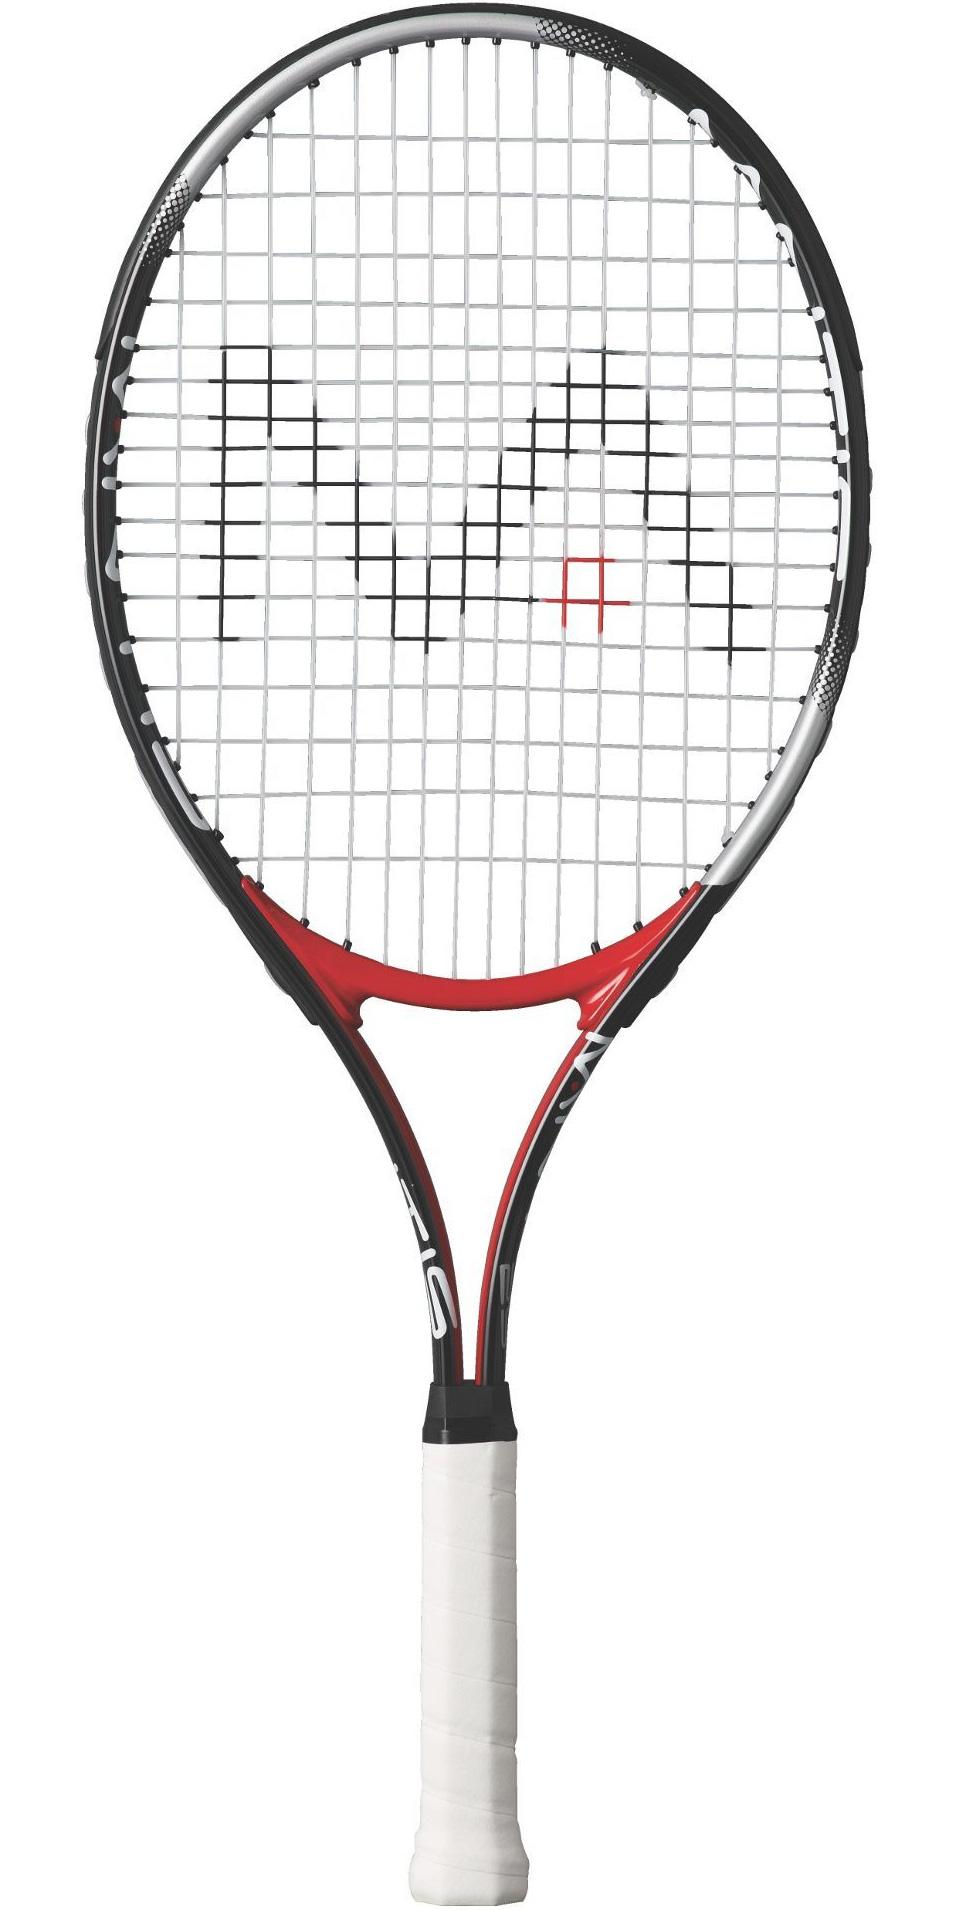 Mantis 25 Inch Junior Tennis Racket - Tennisnuts.com